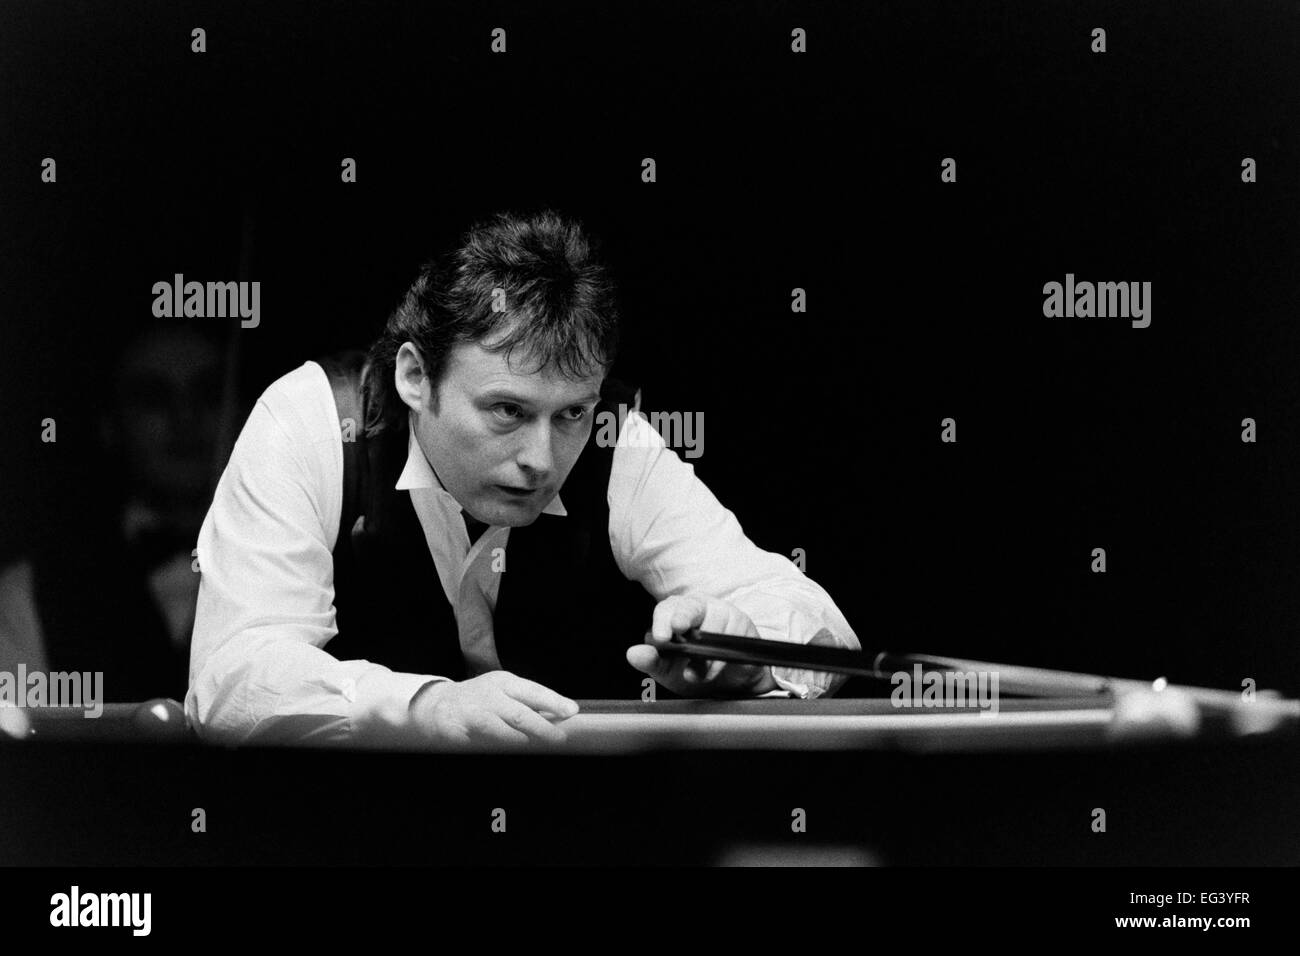 Jimmy White, el jugador de billar profesional británico, apodado "El Torbellino" Foto de stock